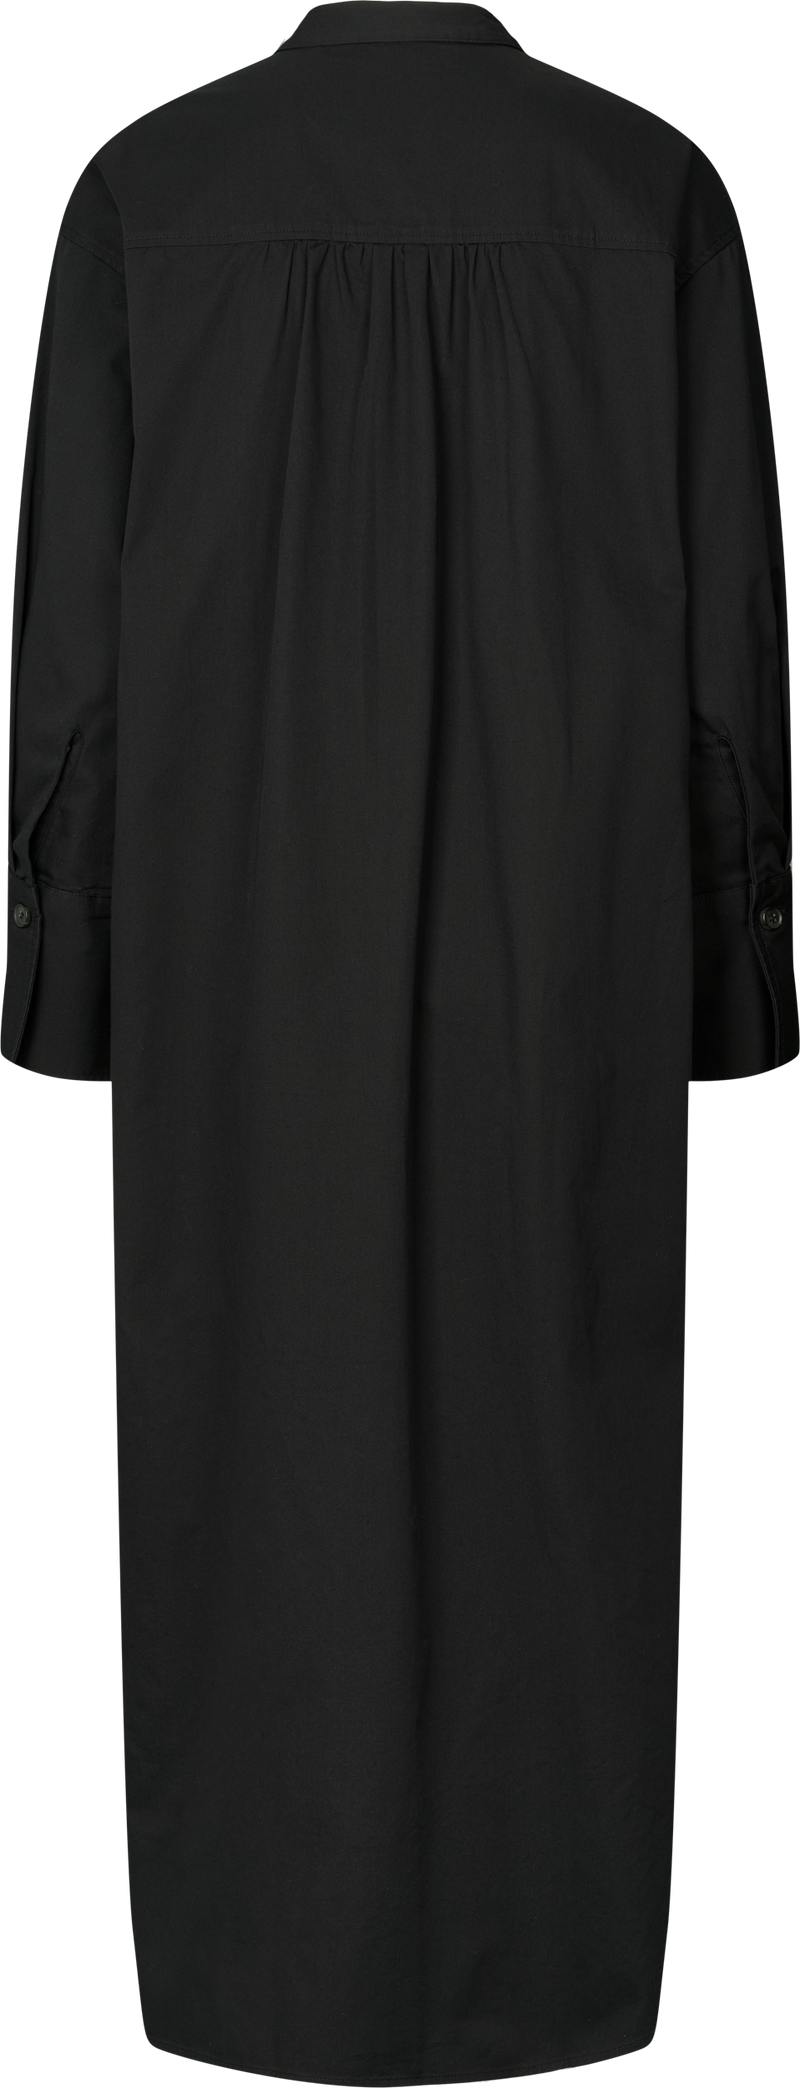 GAI+LISVA Marion Shirt Dress Shirt 650 Black